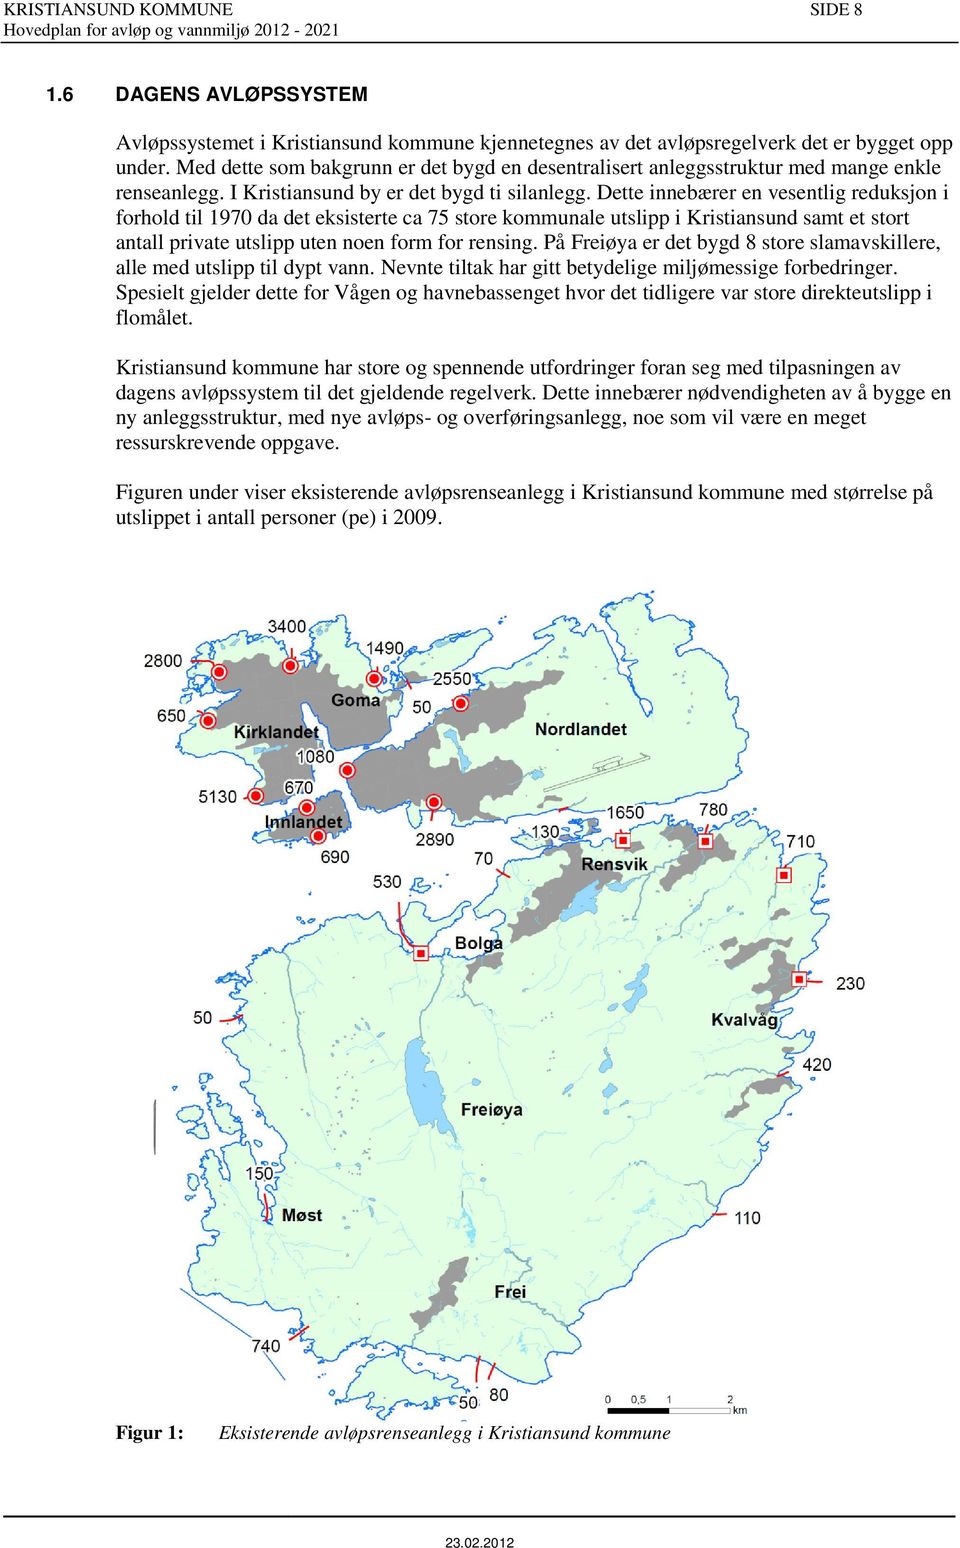 Dette innebærer en vesentlig reduksjon i forhold til 1970 da det eksisterte ca 75 store kommunale utslipp i Kristiansund samt et stort antall private utslipp uten noen form for rensing.